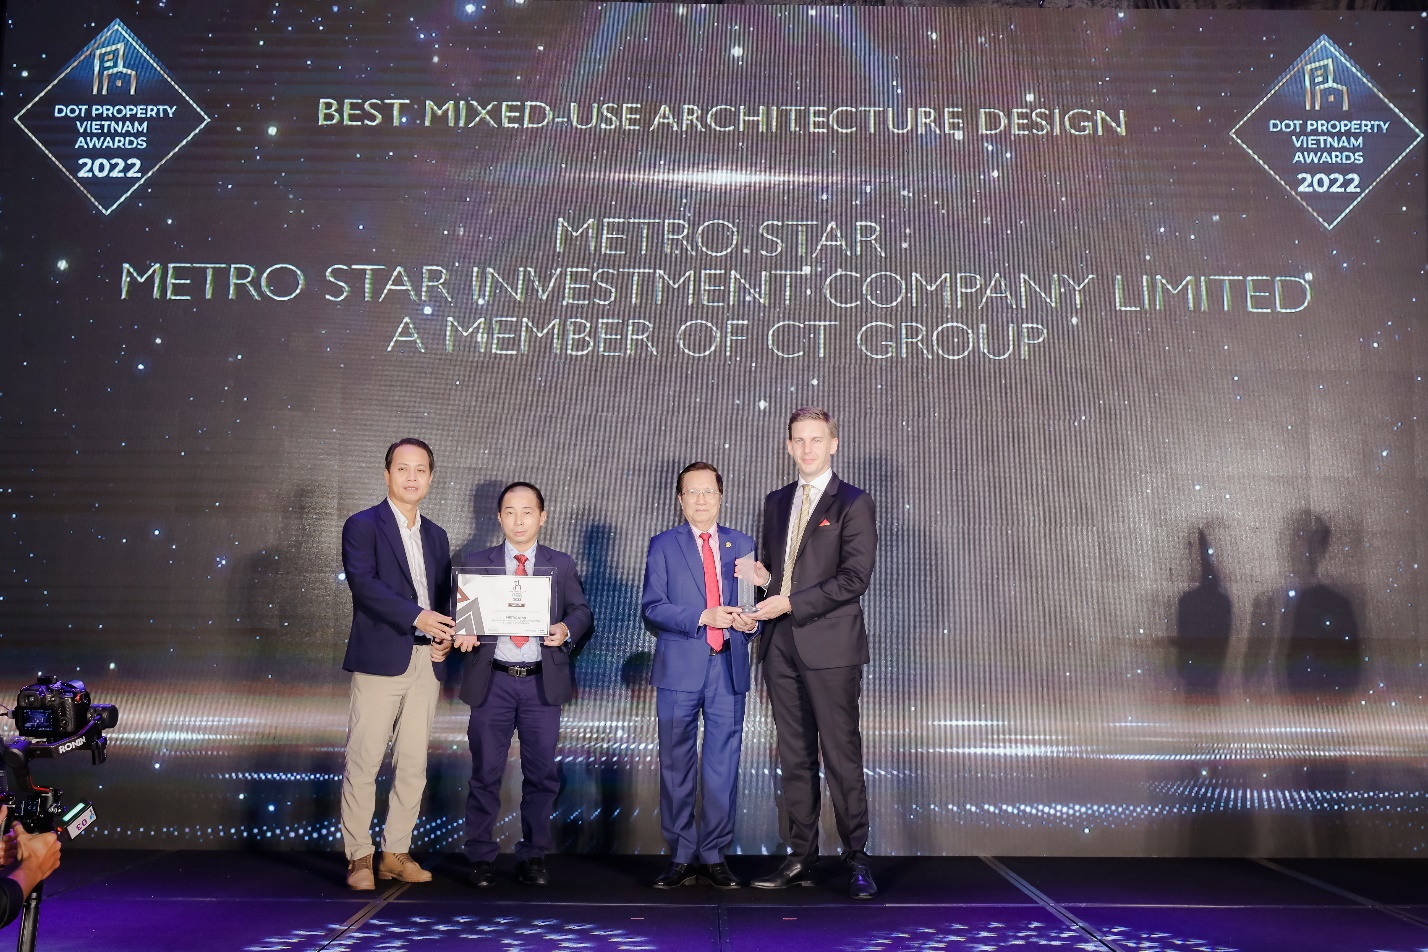 Metro Star nhận giải thưởng “Dự án phức hợp có thiết kế kiến trúc đẹp nhất Việt Nam năm 2022” - Ảnh 1.